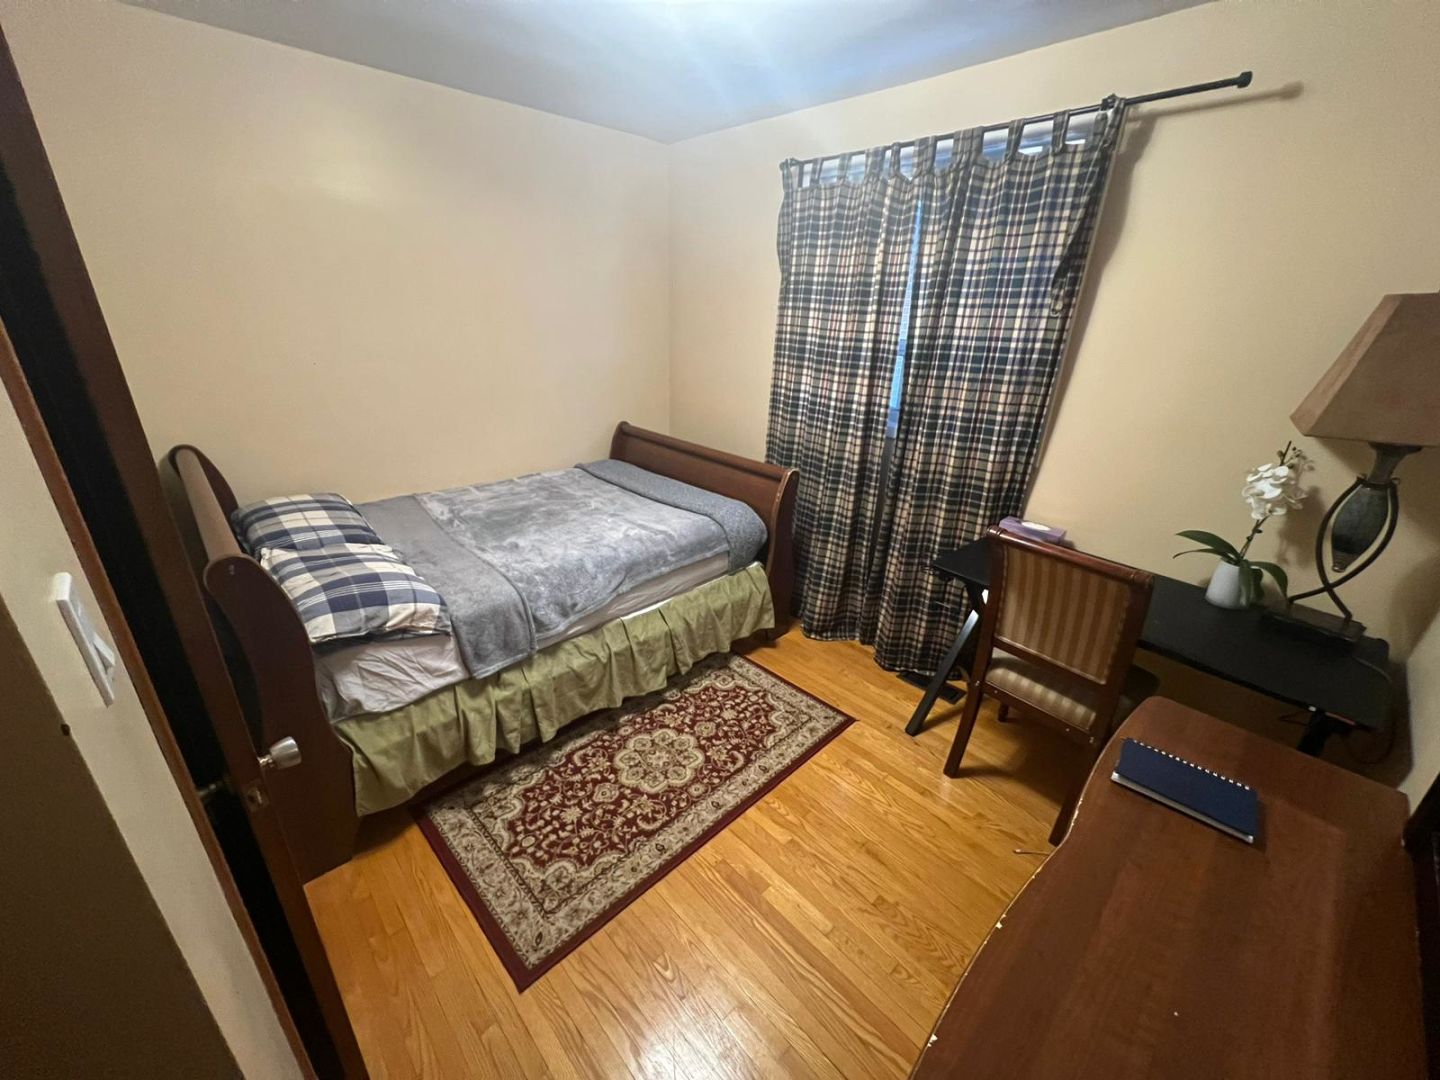 Elite Homestay Room - Monclova Rd, Toronto room for rent 43